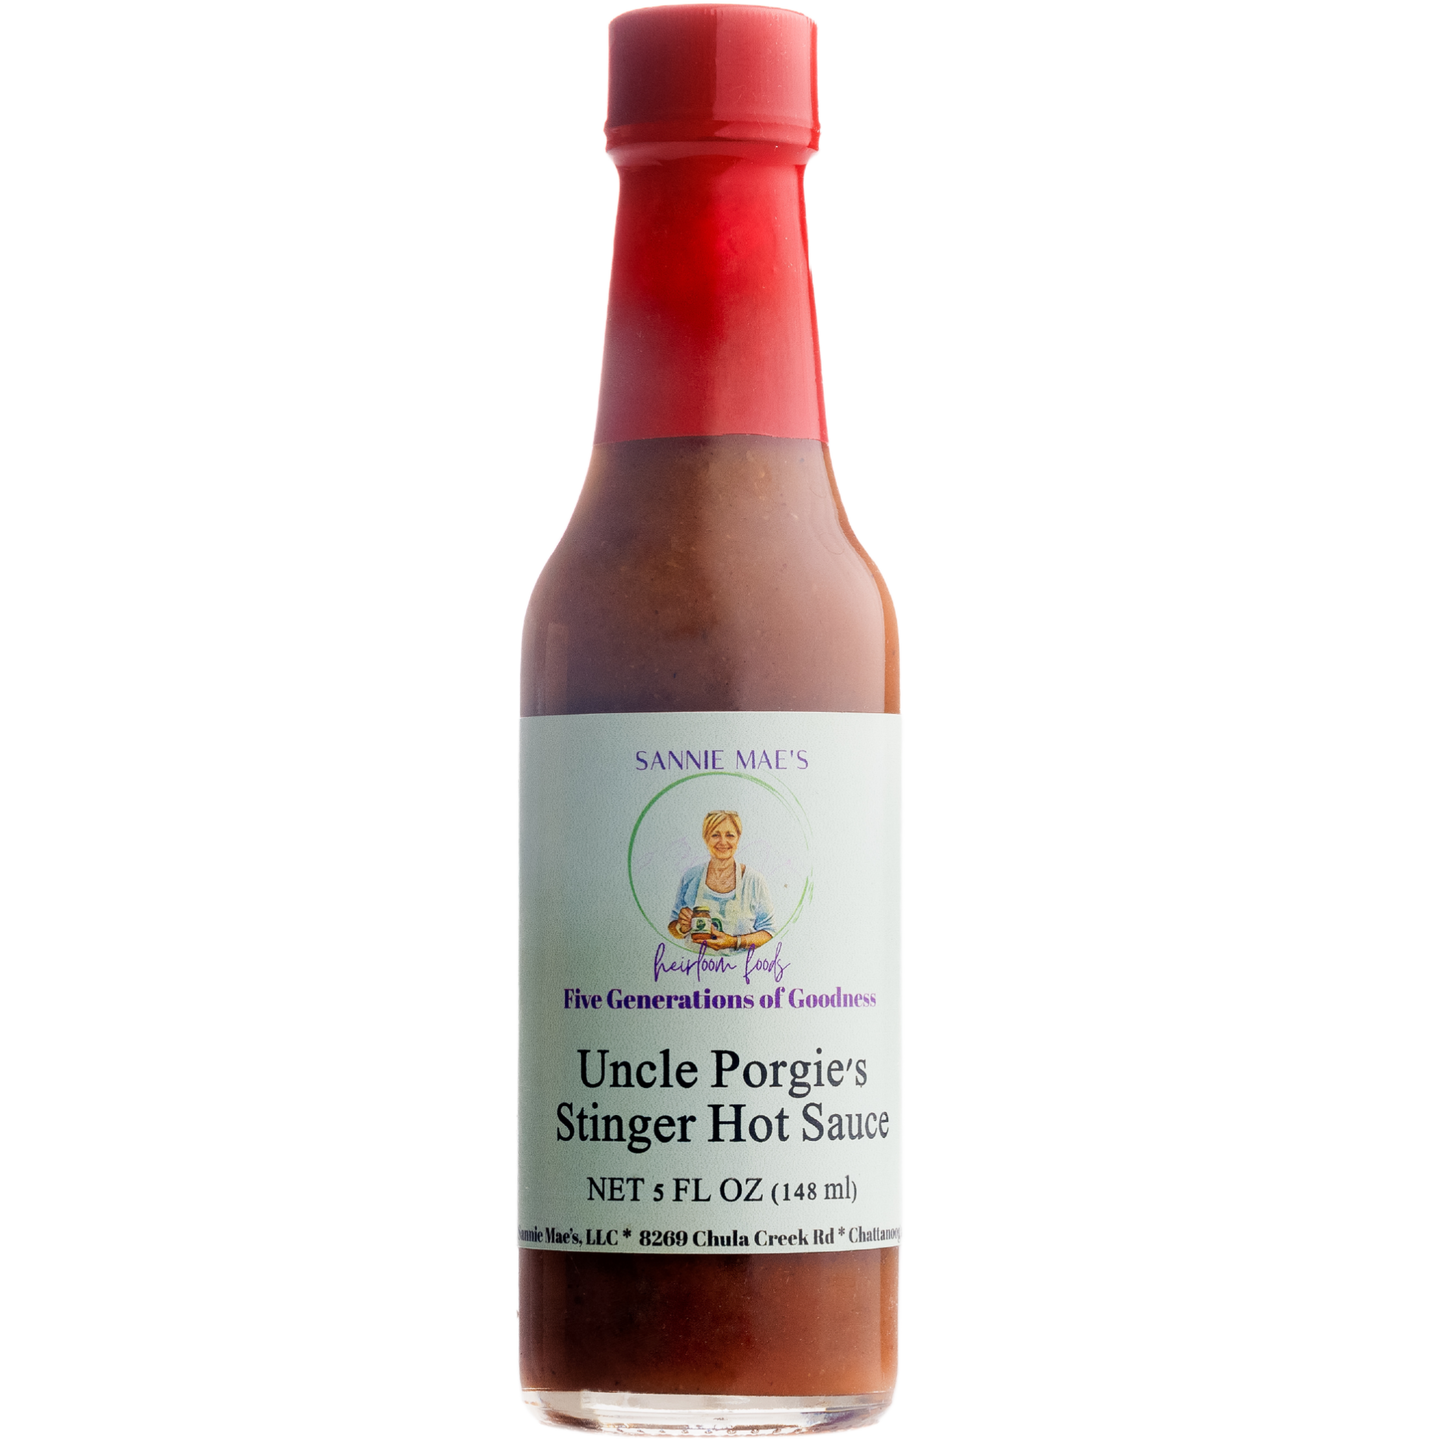 Uncle Porgie's Stinger Hot Sauce